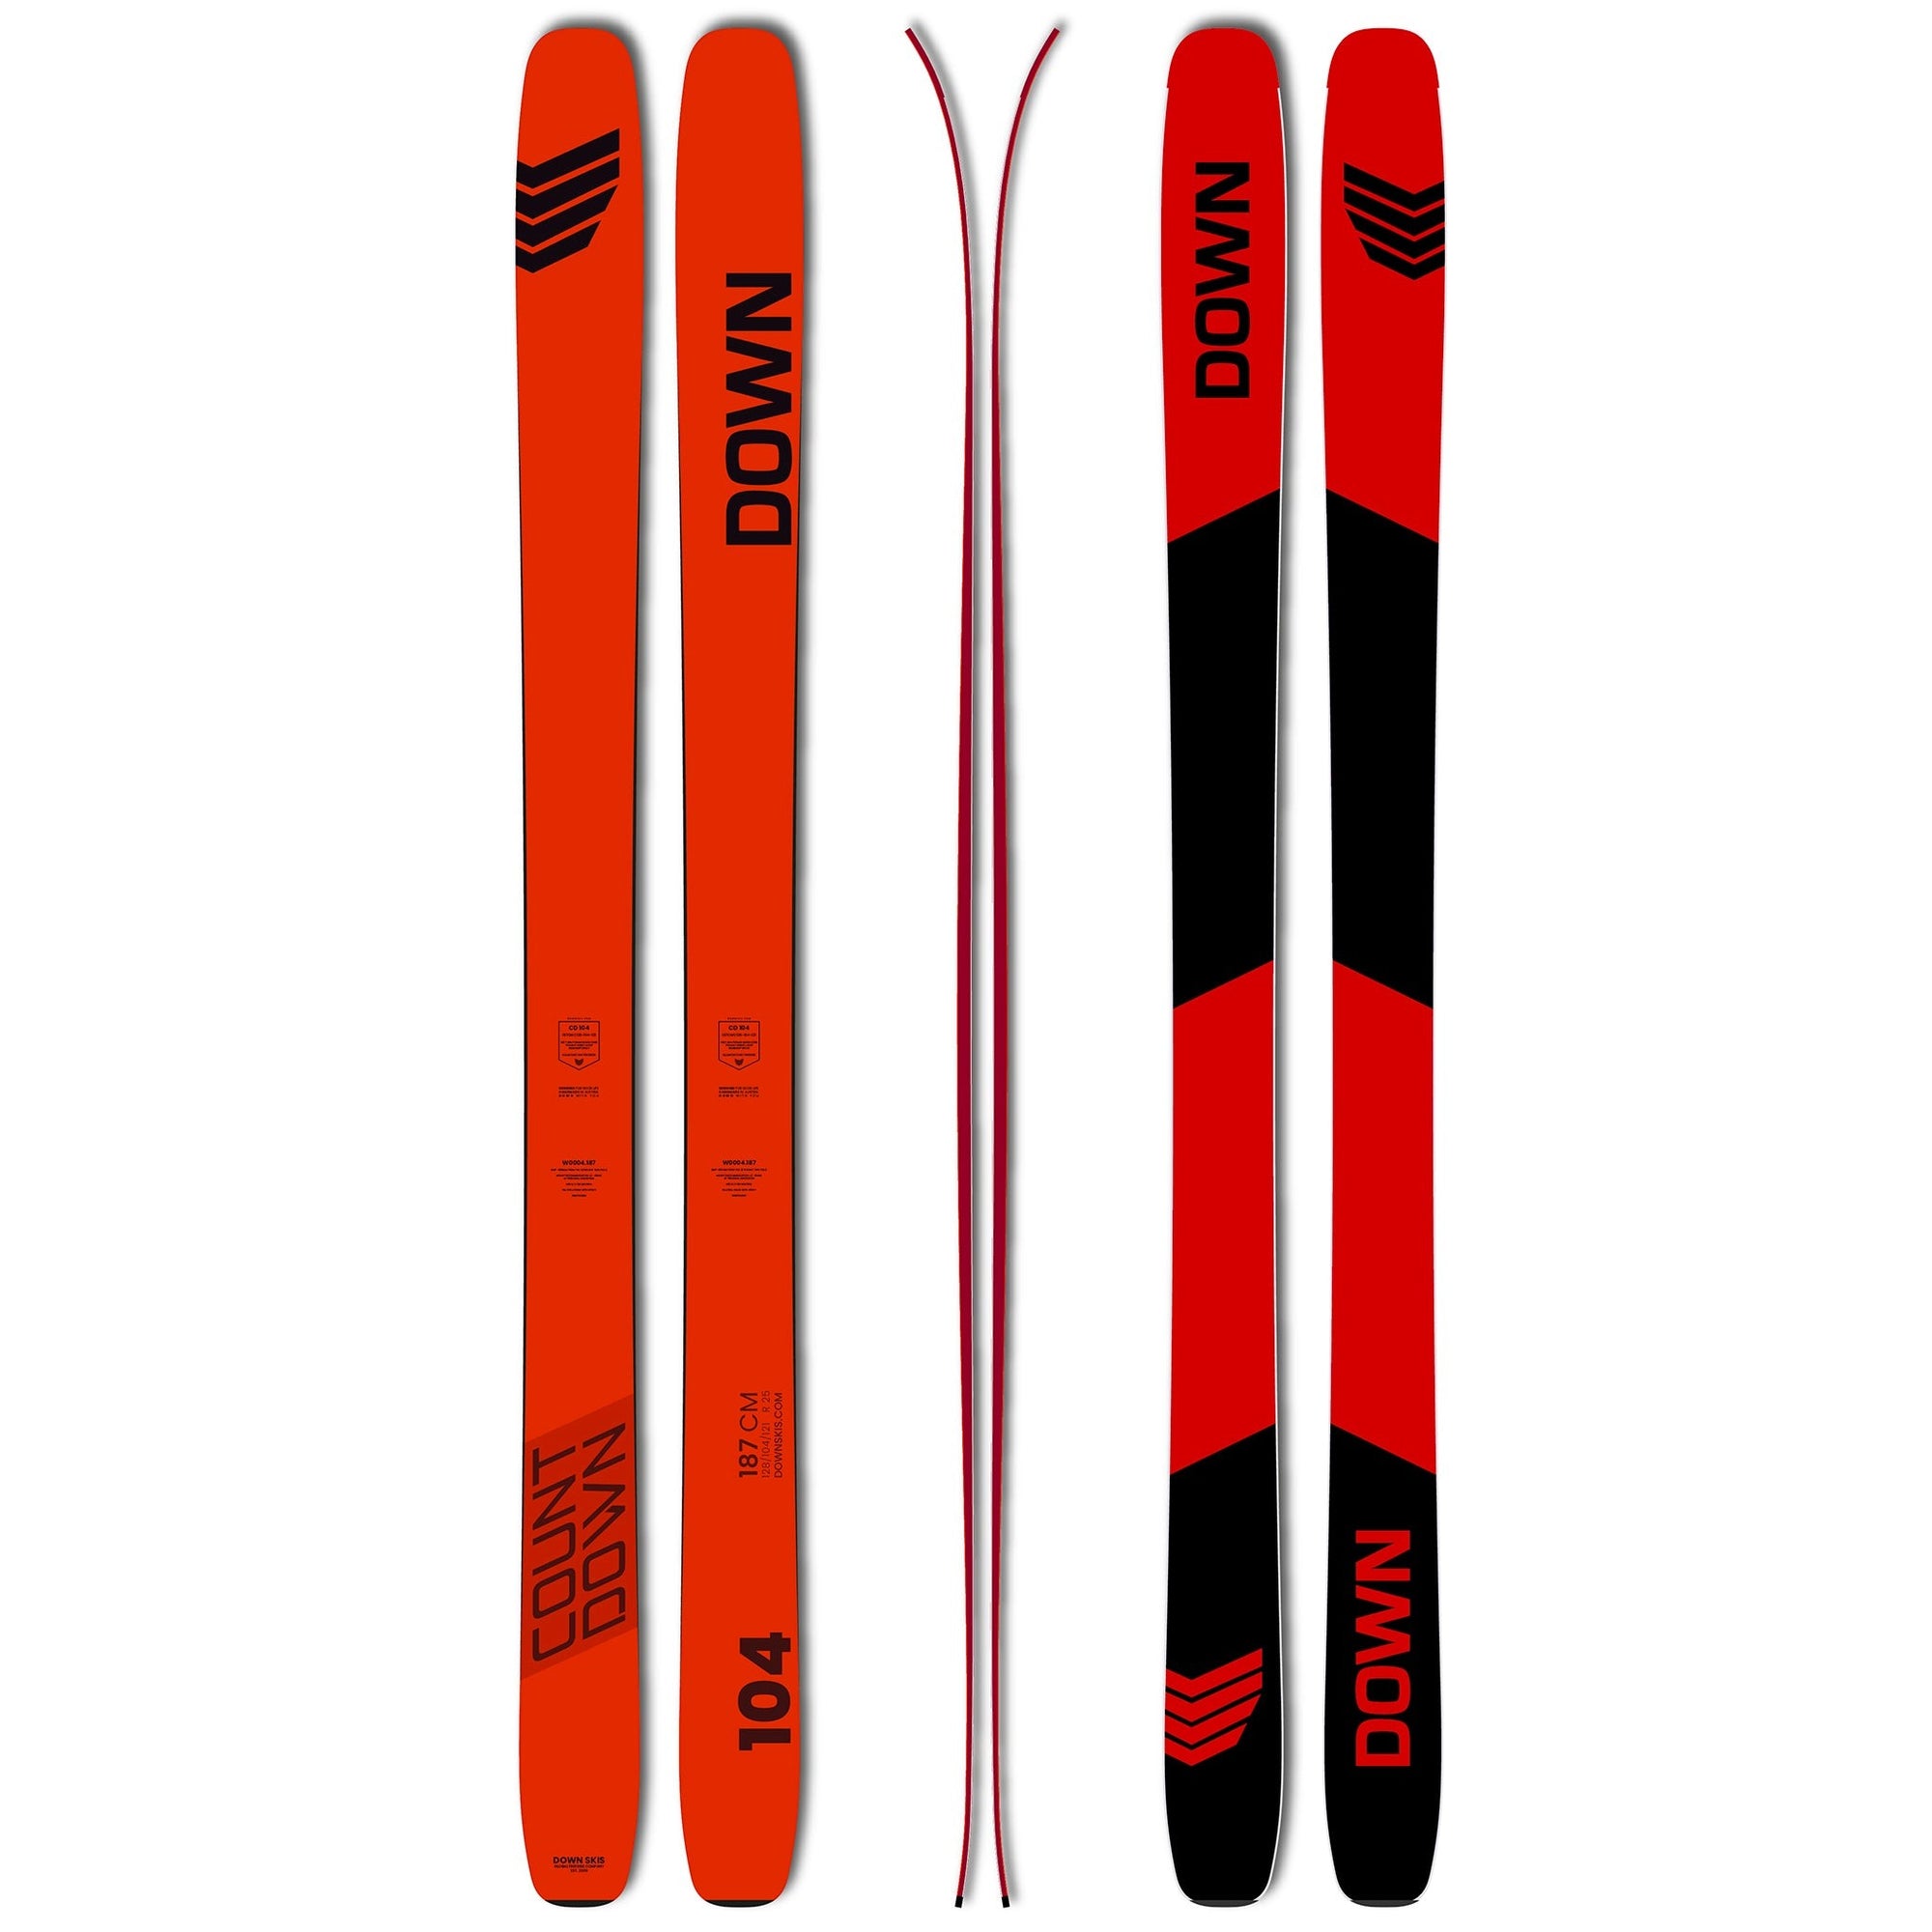 DOWN CD104 CARBON model 23/24 - showing: ski top design.